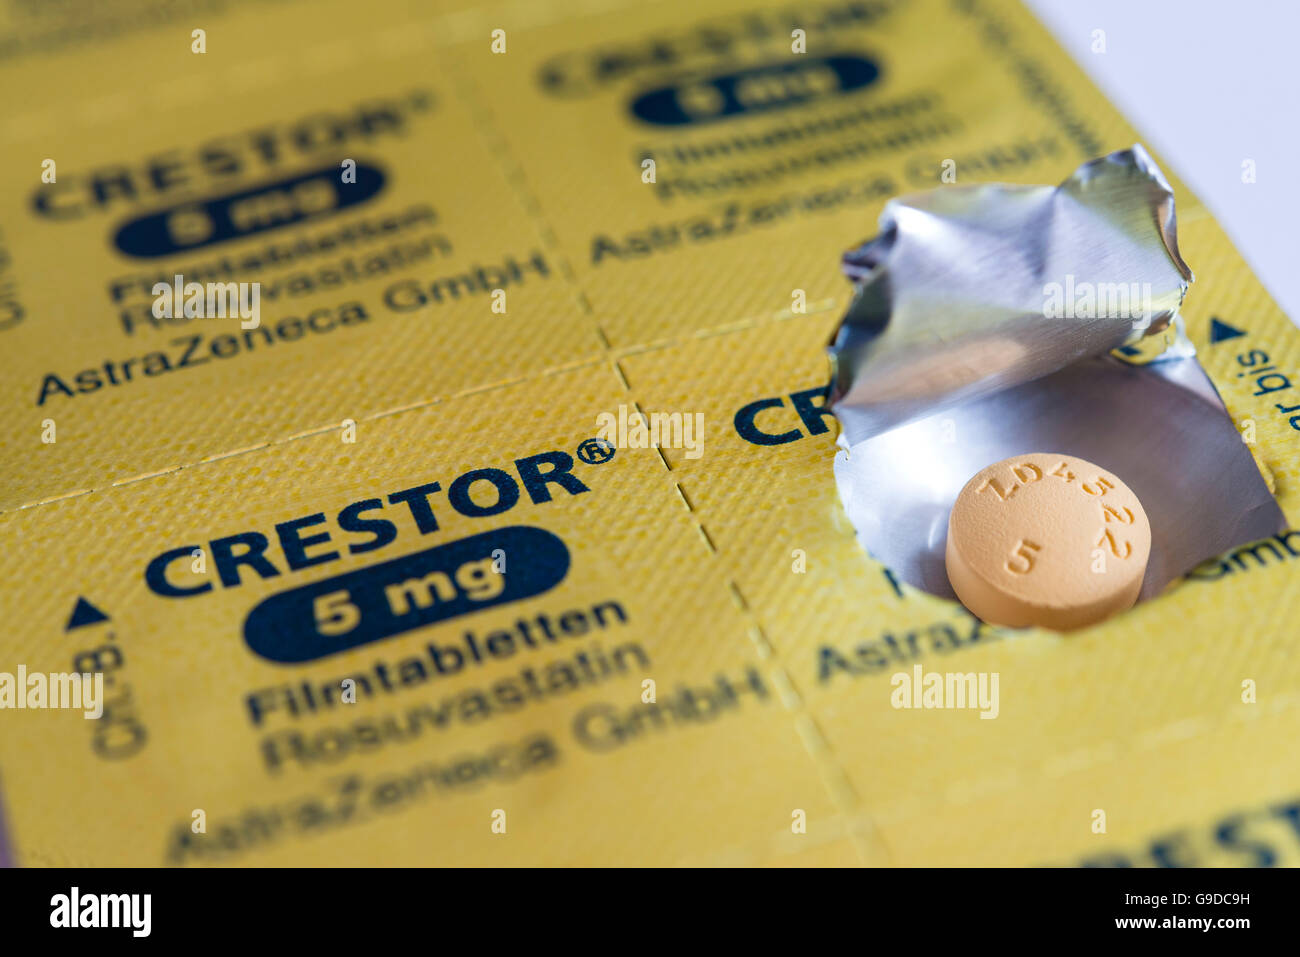 Paquetes blíster de lámina para las estatinas reducen el colesterol CRESTOR marca de píldoras. Foto de stock